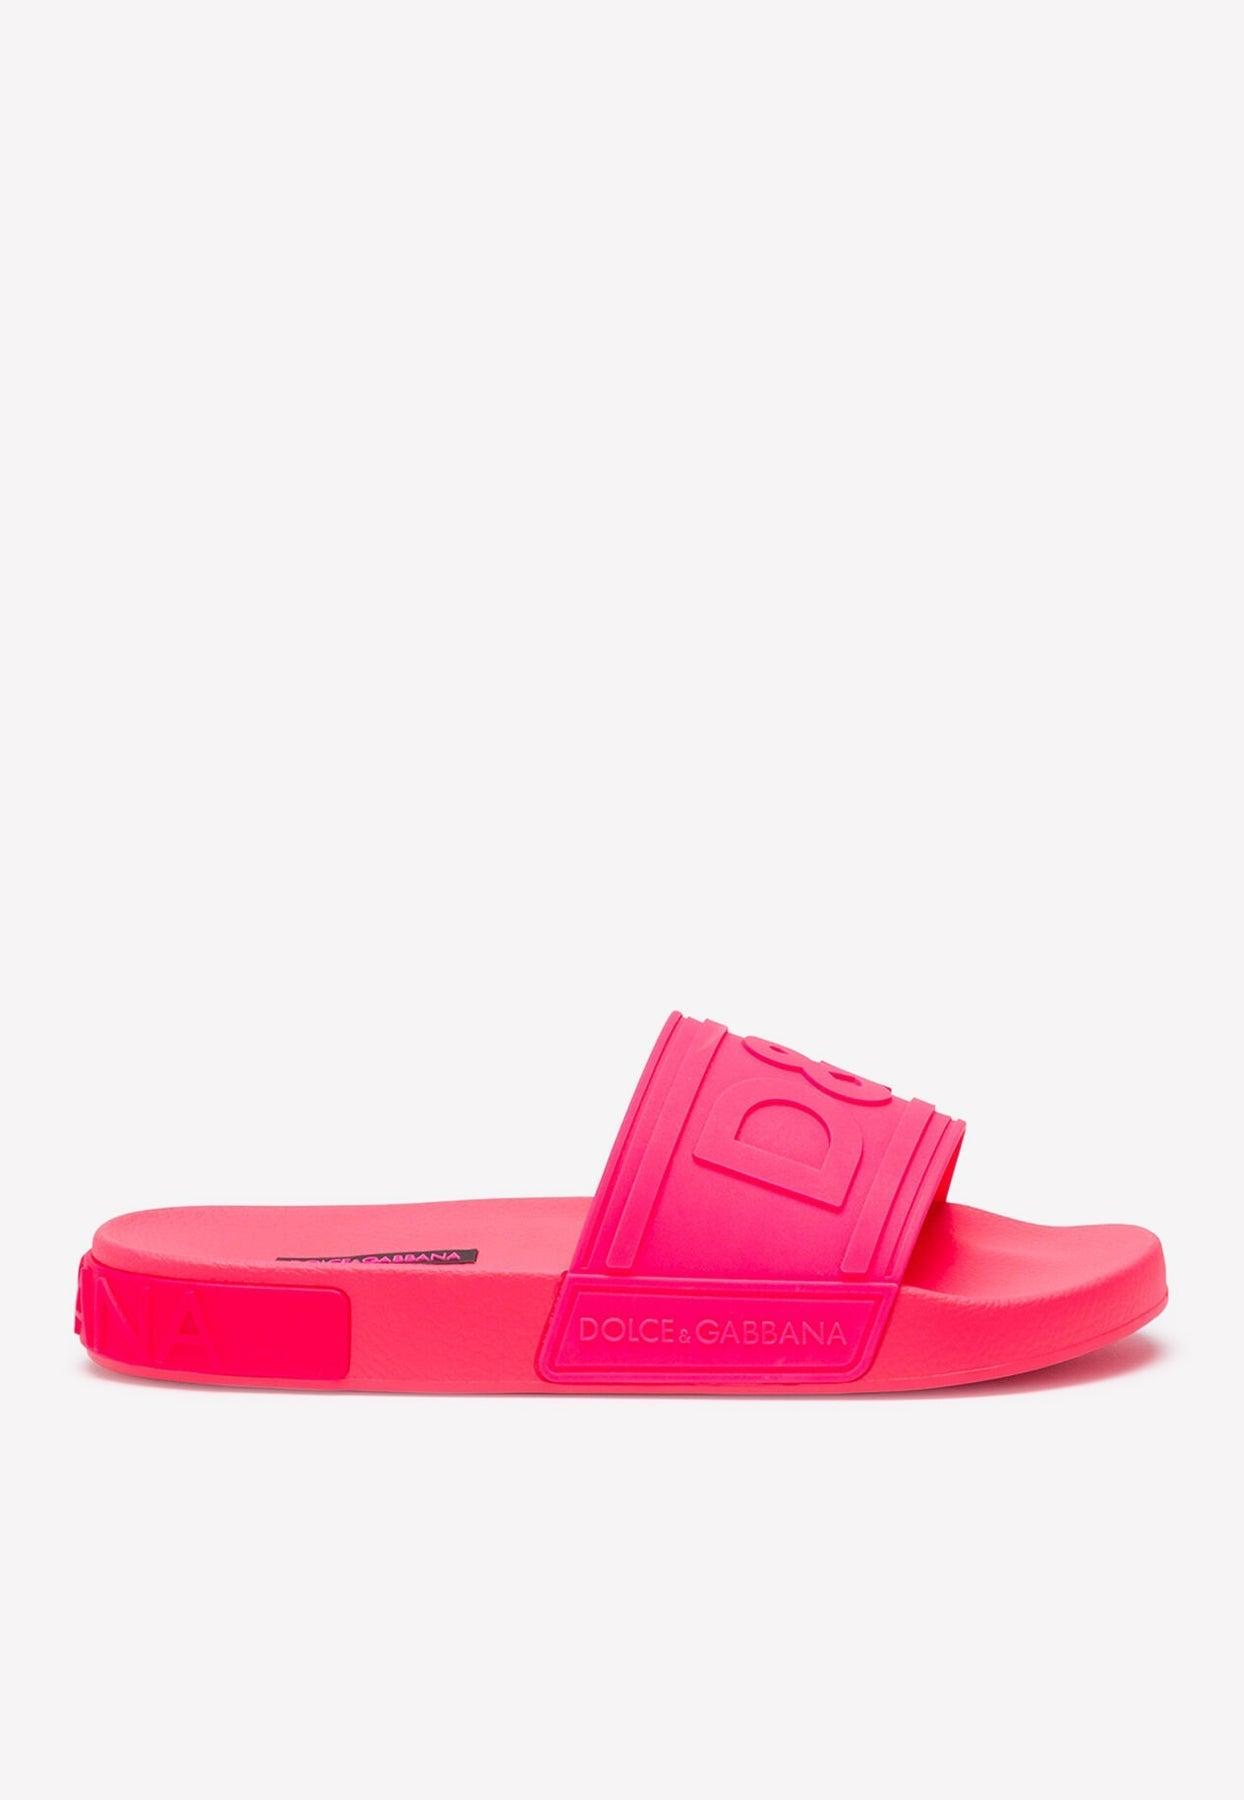 Dolce & Gabbana D&g Logo Fluorescent Rubber Beach Slides in Pink | Lyst ...